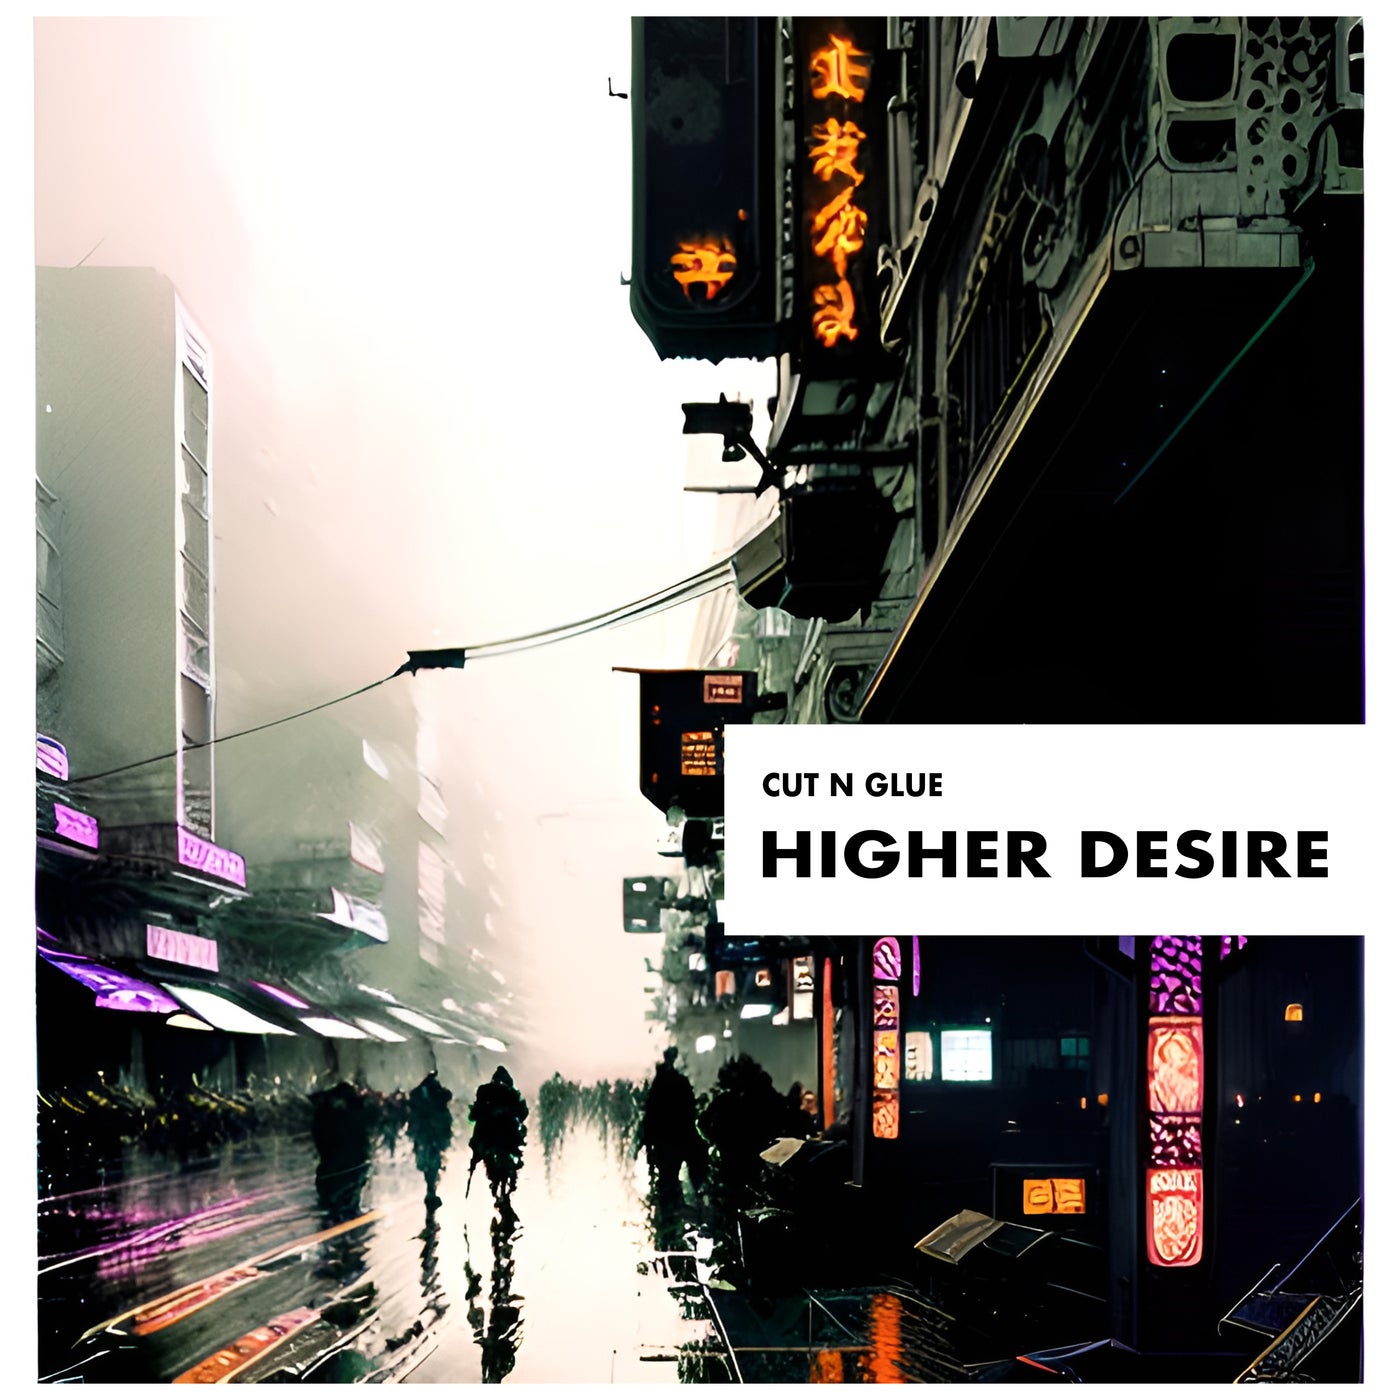 Higher Desire